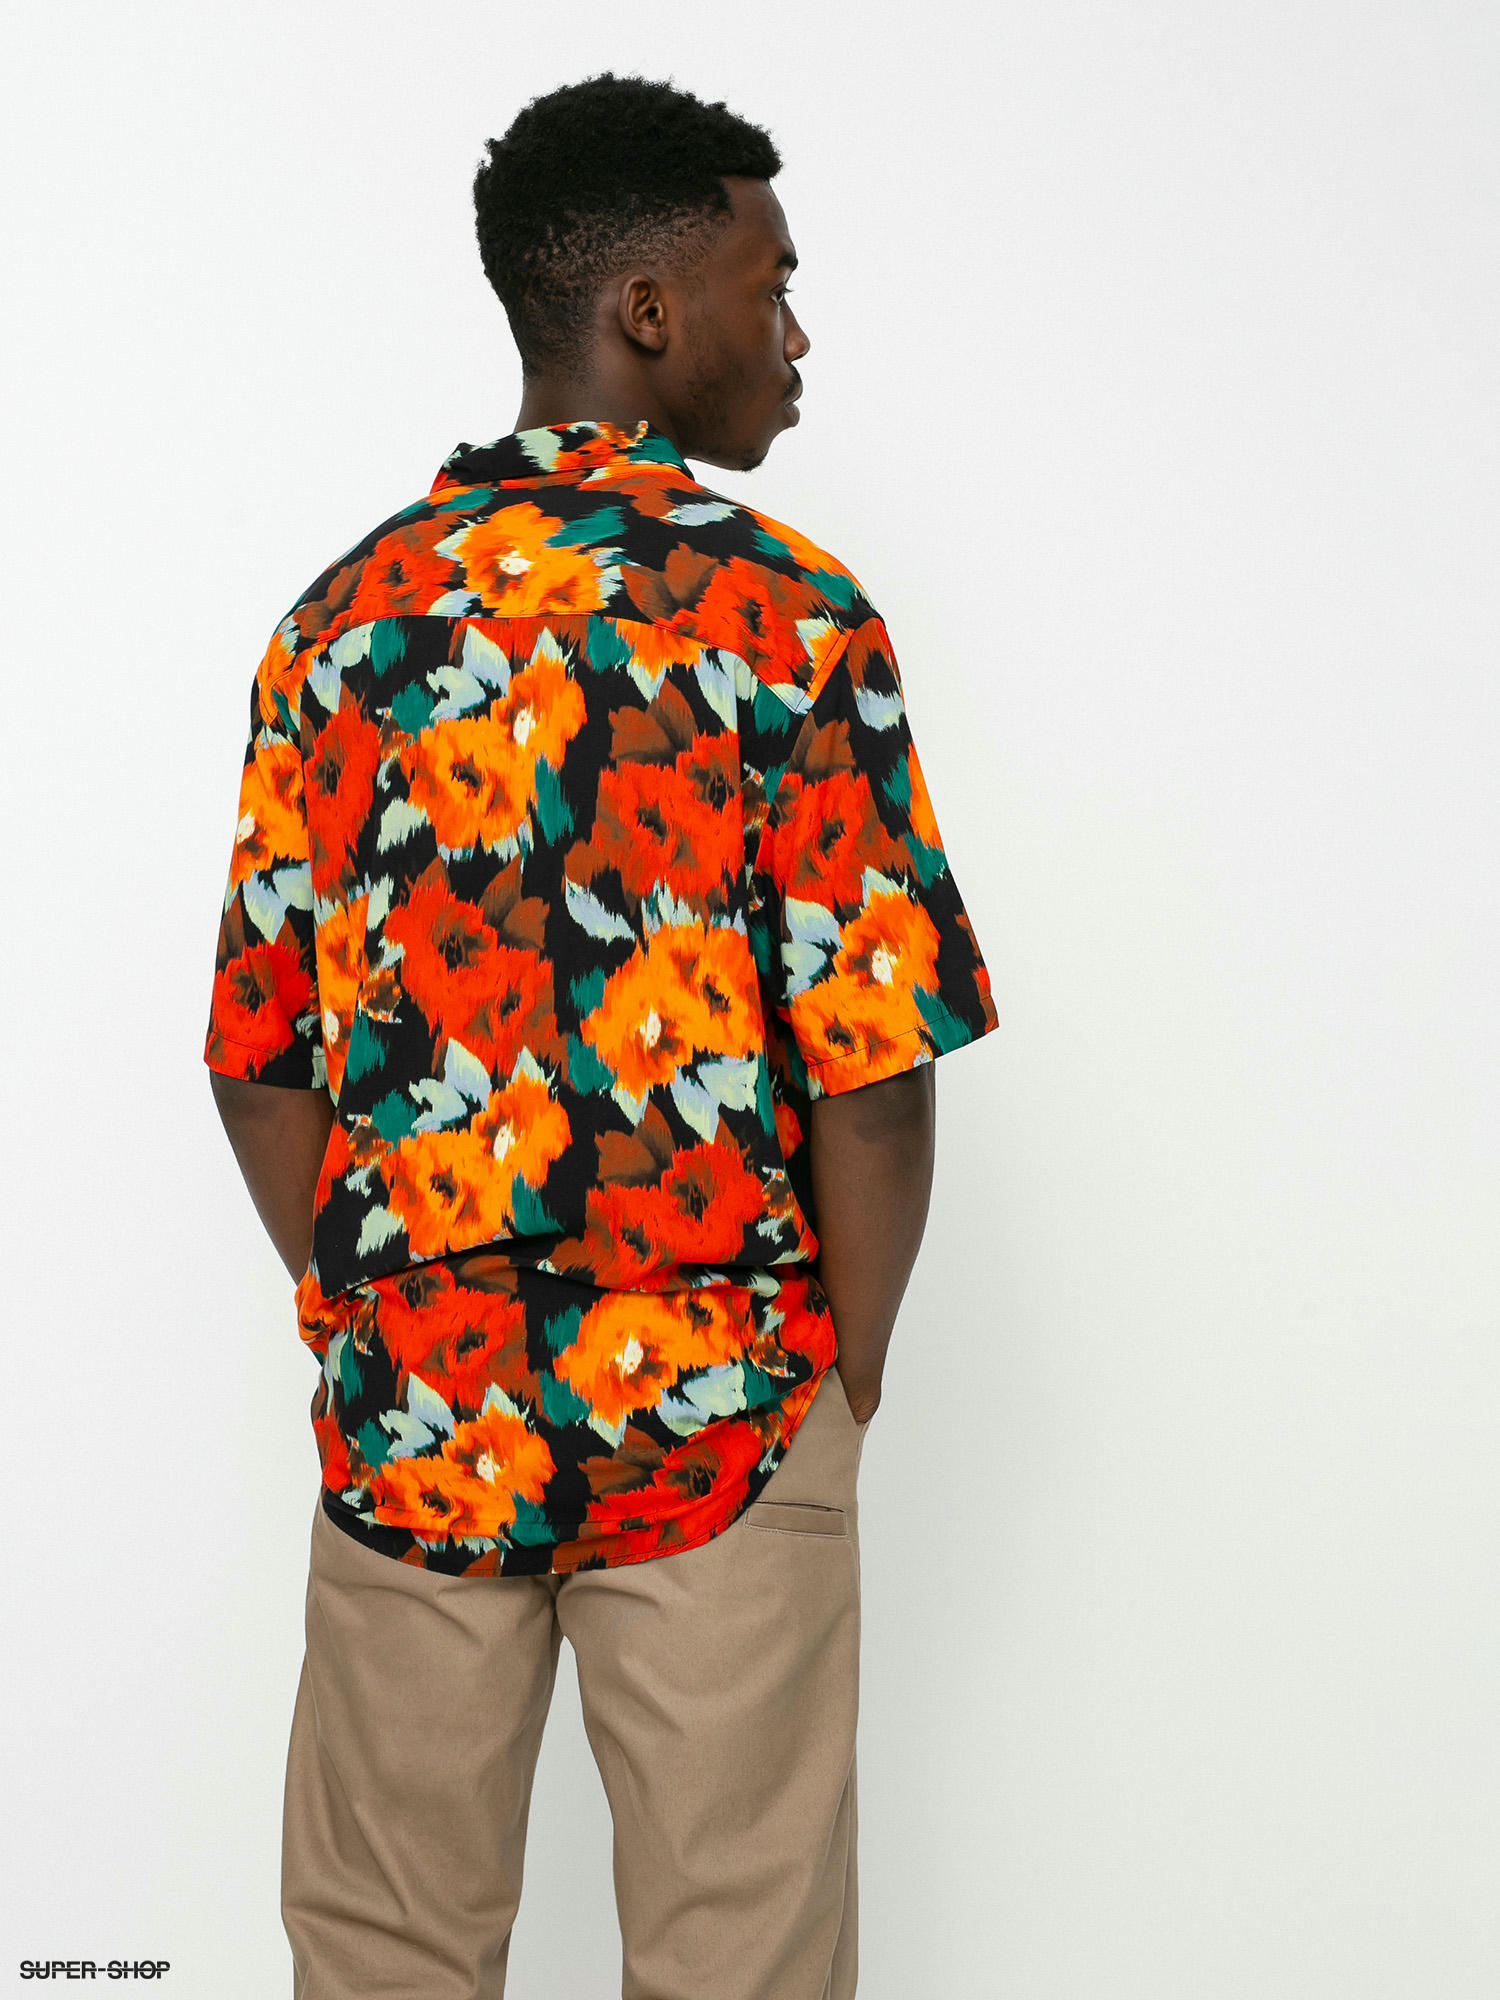 Wonder Floral - Short Sleeve Shirt for Men